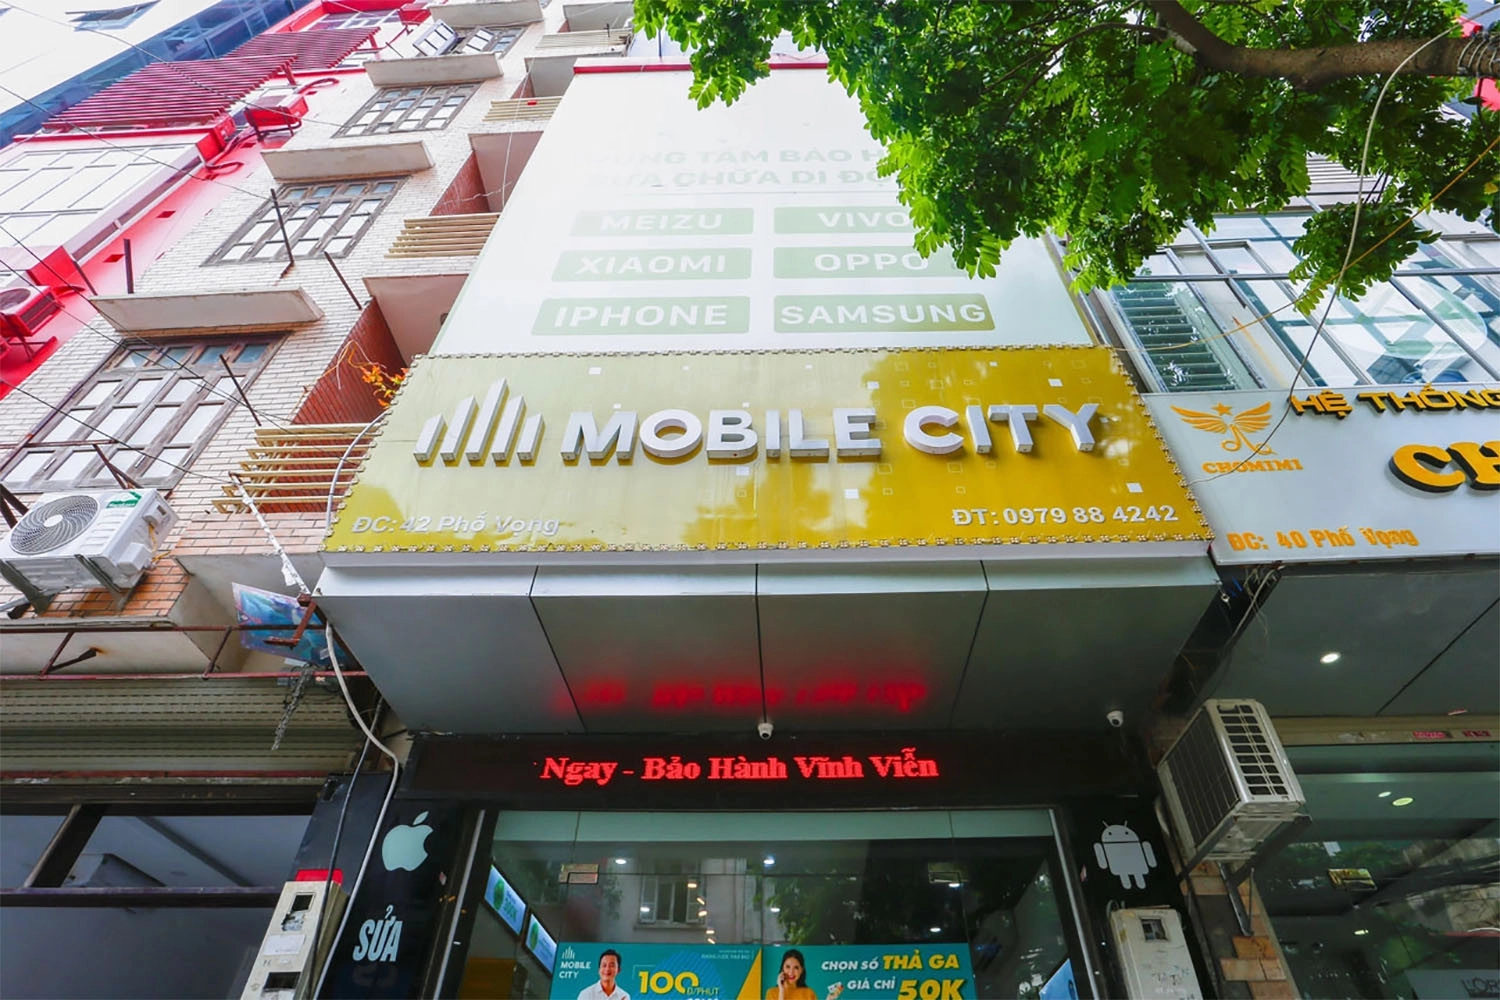 Thay Pin iPhone X, Địa chỉ thay Pin iPhone X tại Hà Nội, Đà Nẵng, Tp.HCM